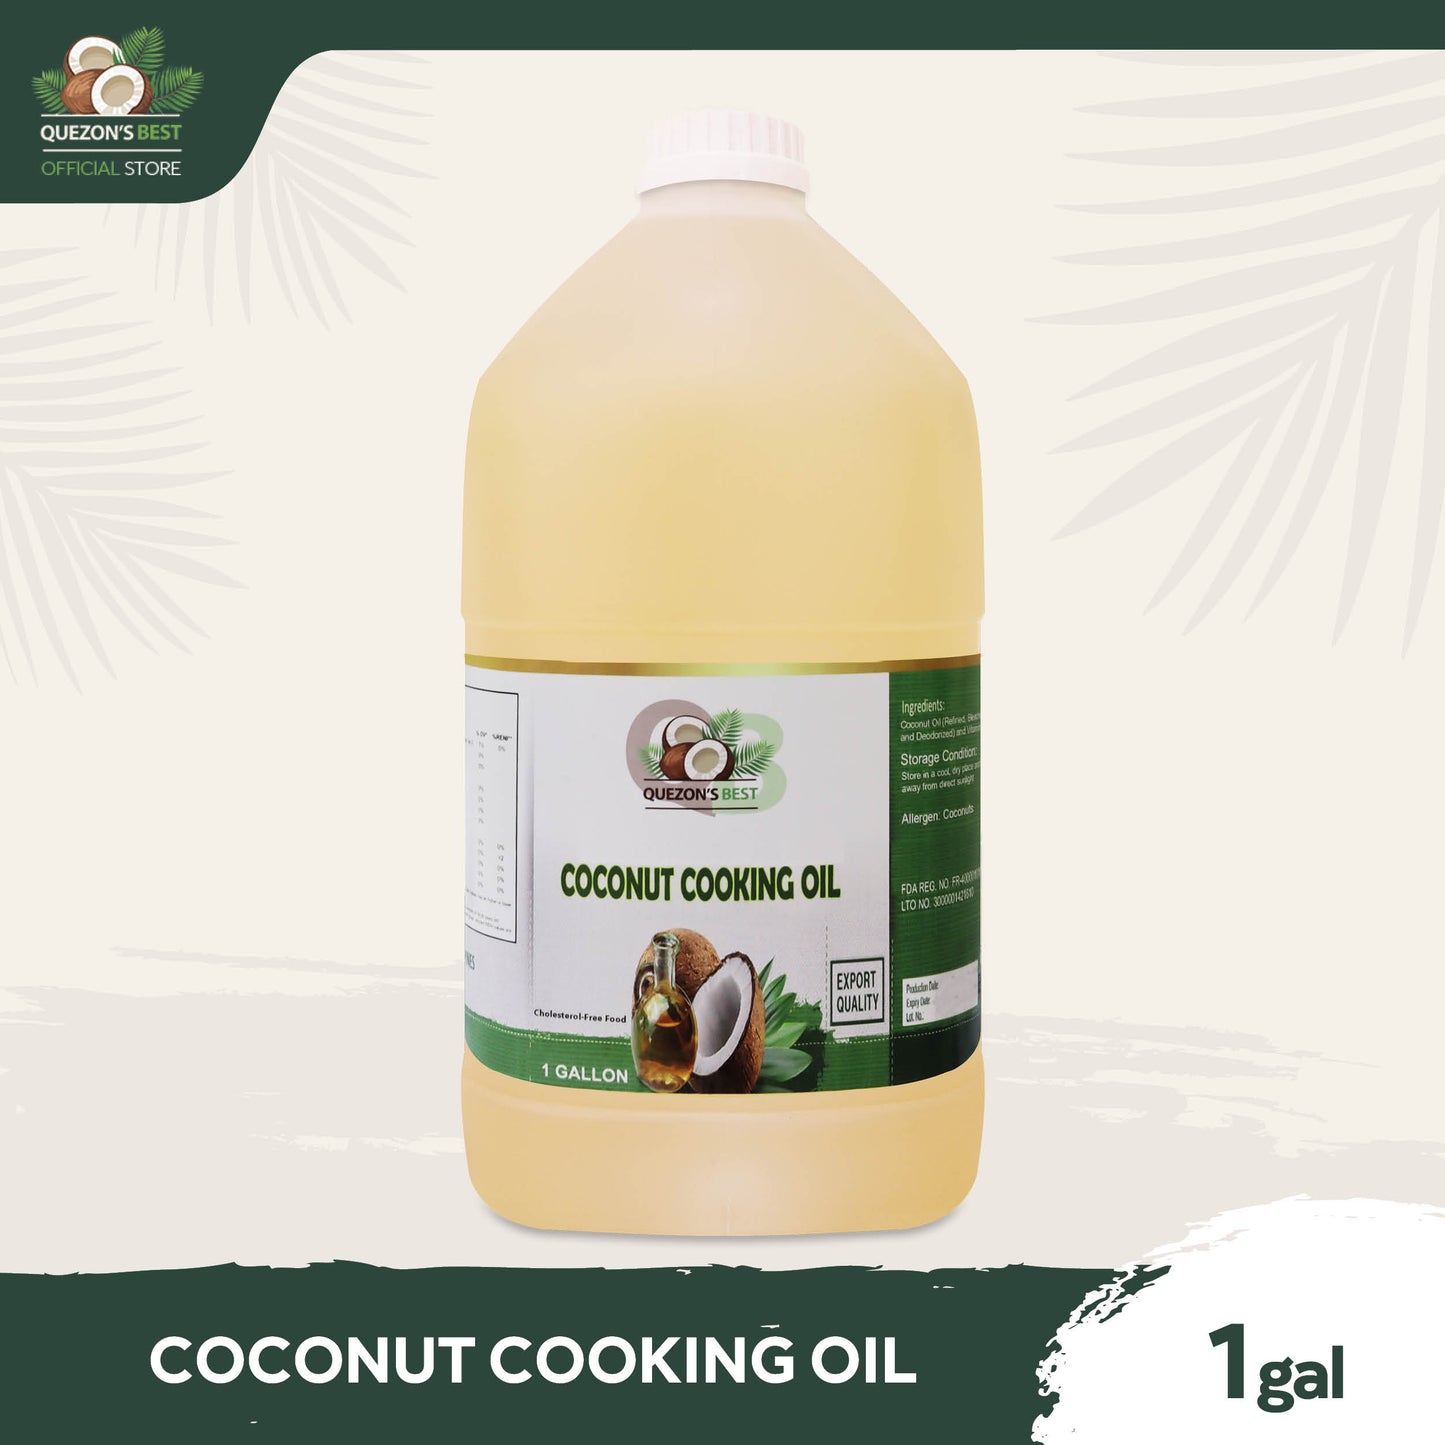 Quezon's Best Coconut Cooking Oil 1 Gallon